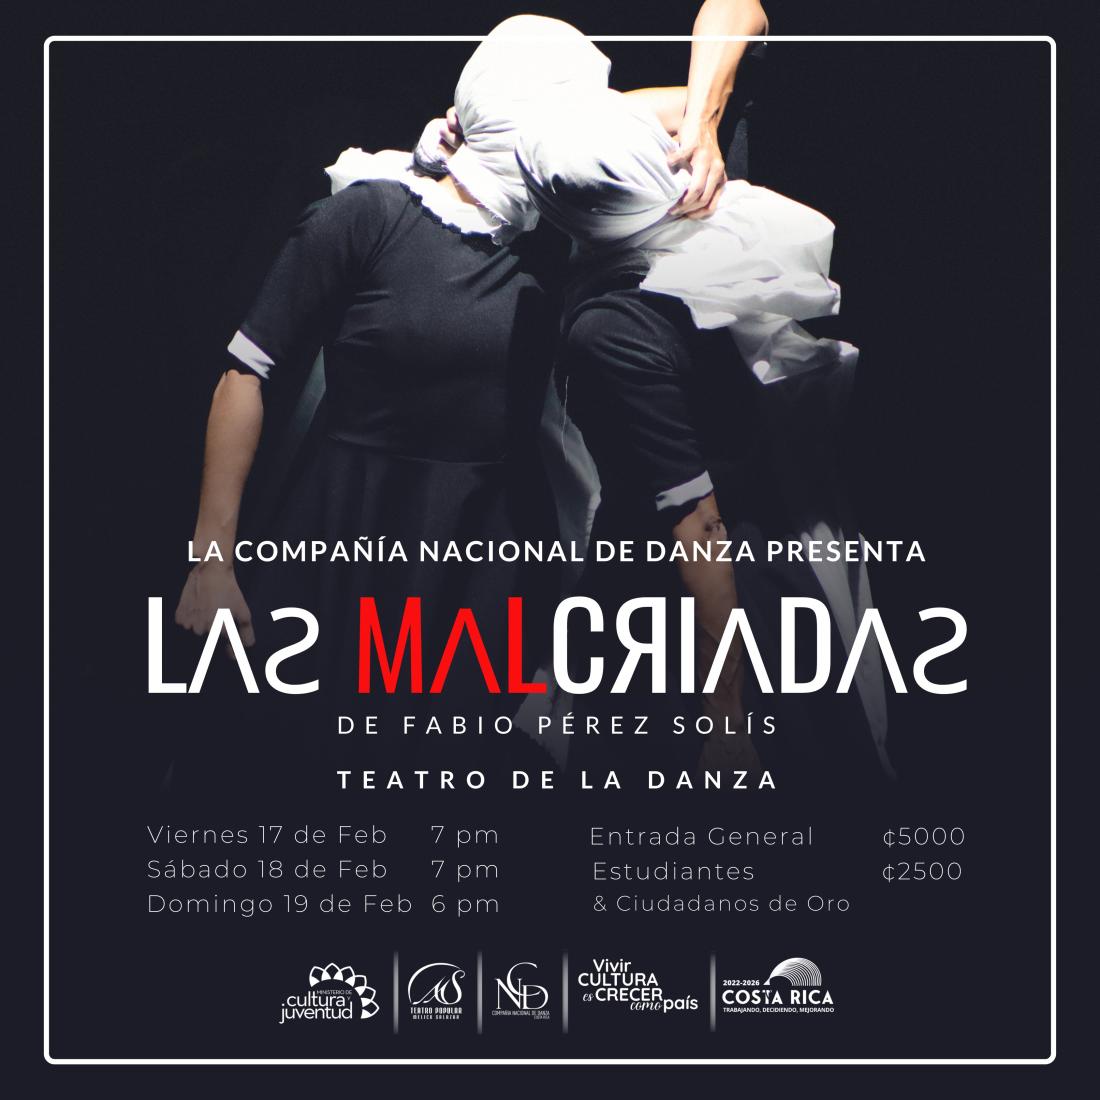 El espectáculo de danza “Las Malcriadas”, regresa este mes de febrero al escenario del Teatro de la Danza, bajo la interpretación de la Compañía Nacional de Danza.